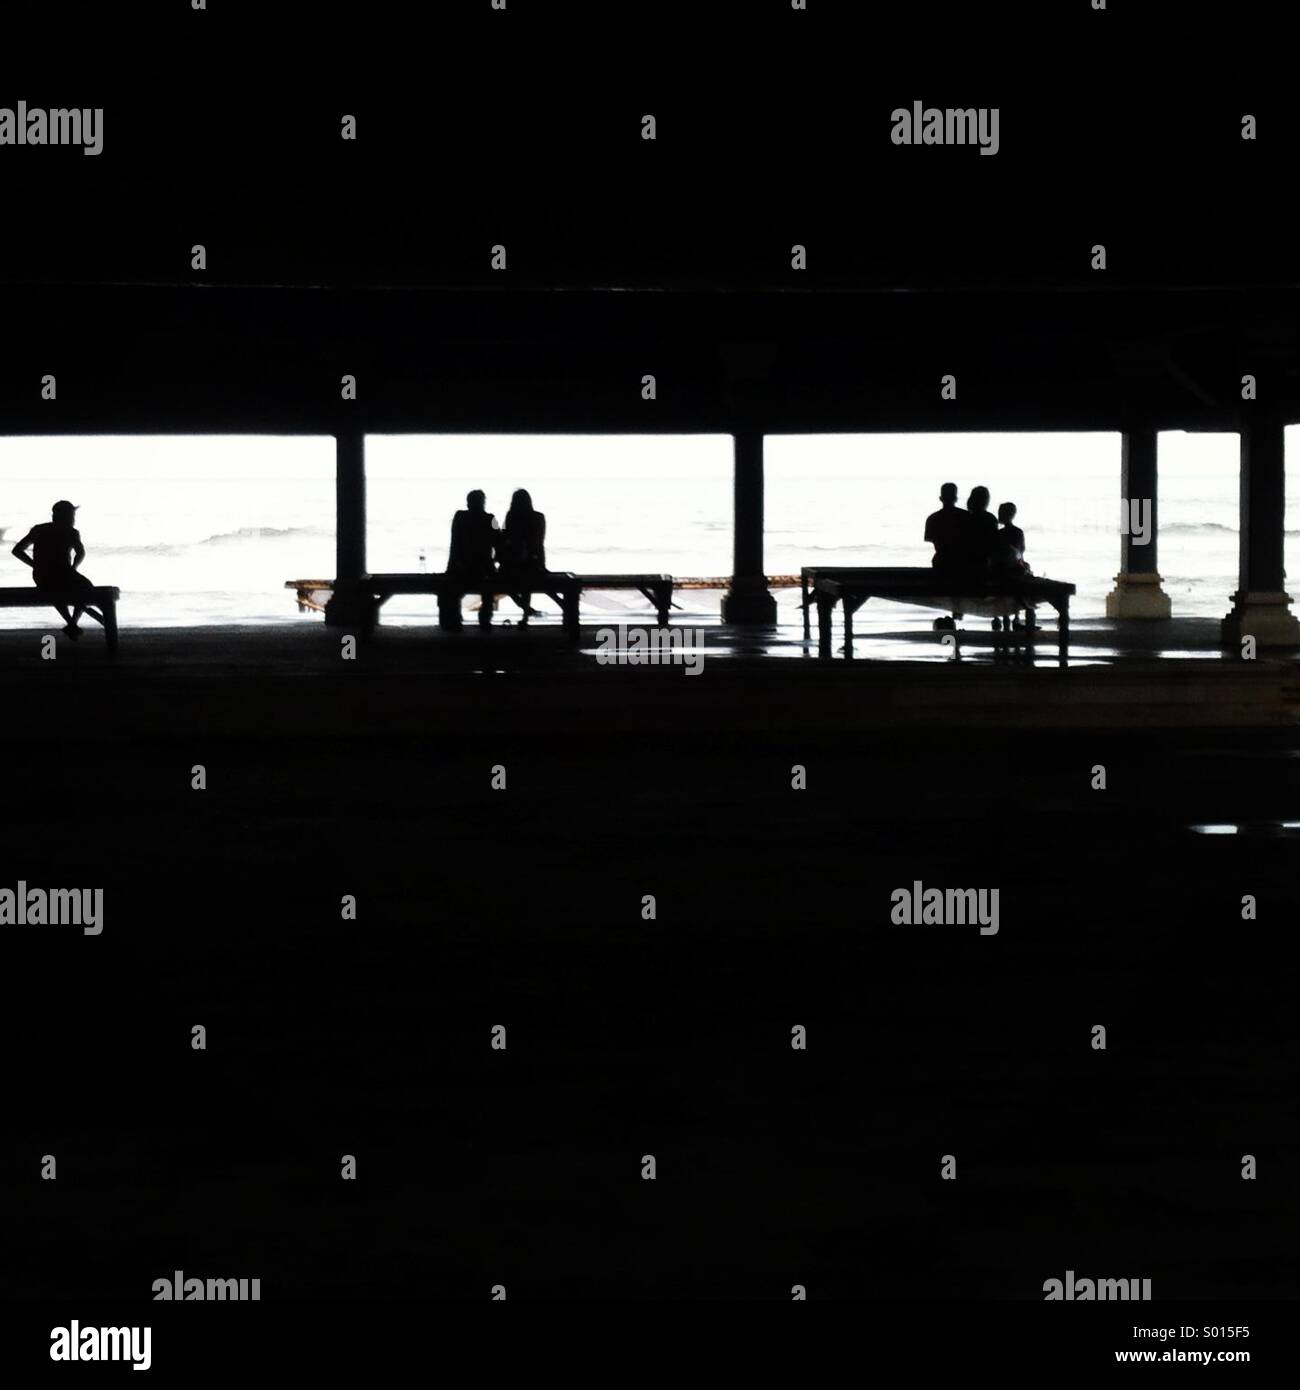 Schwarz / weiß Bild der Silhouette des Menschen sitzen auf drei Bänke mit Blick auf das Meer, Rücken gerichteten Kamera und Rahmen von schwarzen Negativraum... Stockfoto